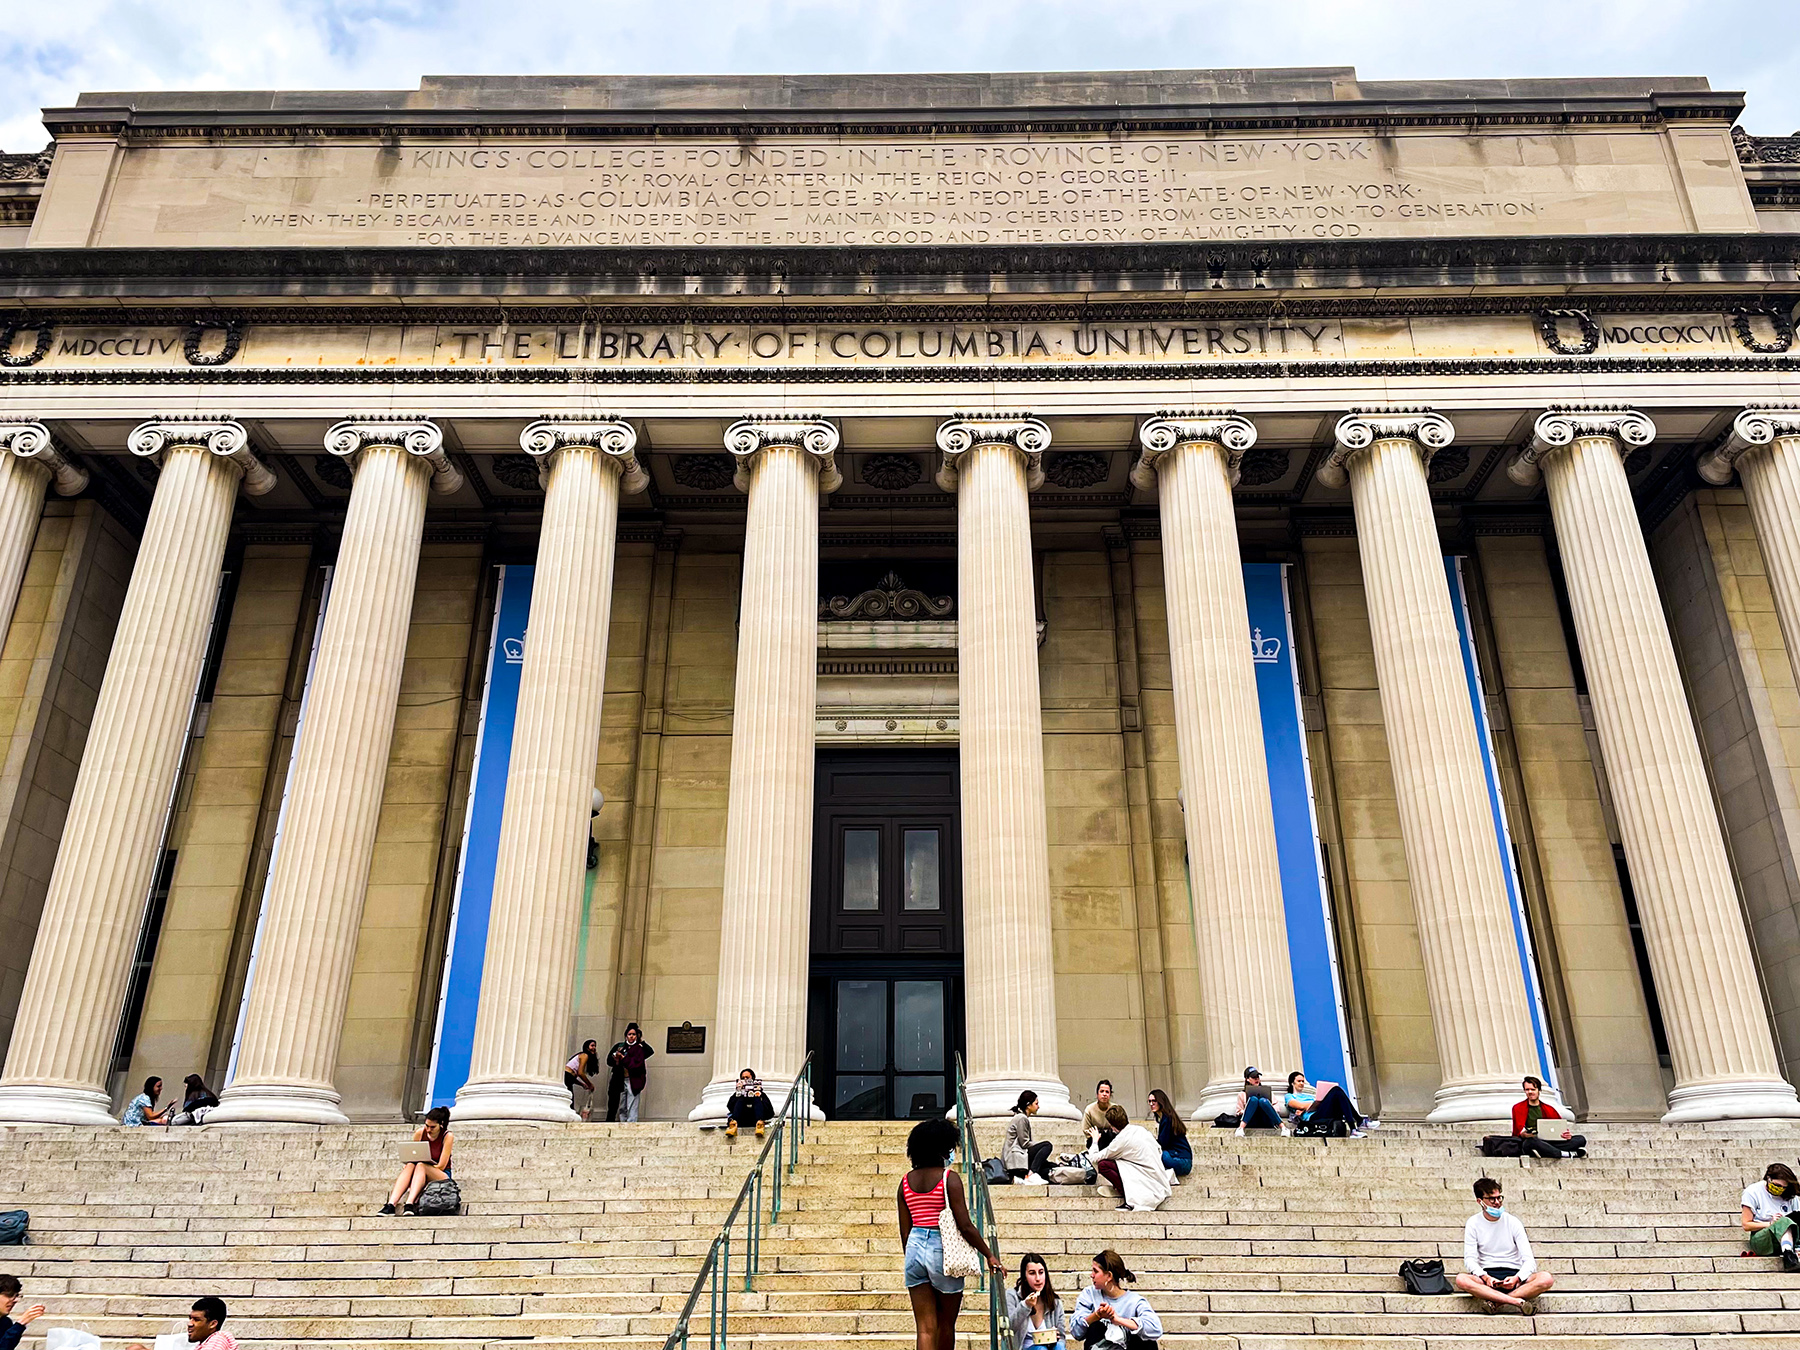 Low Memorial Library at Columbia University in New York City, April 14, 2021.